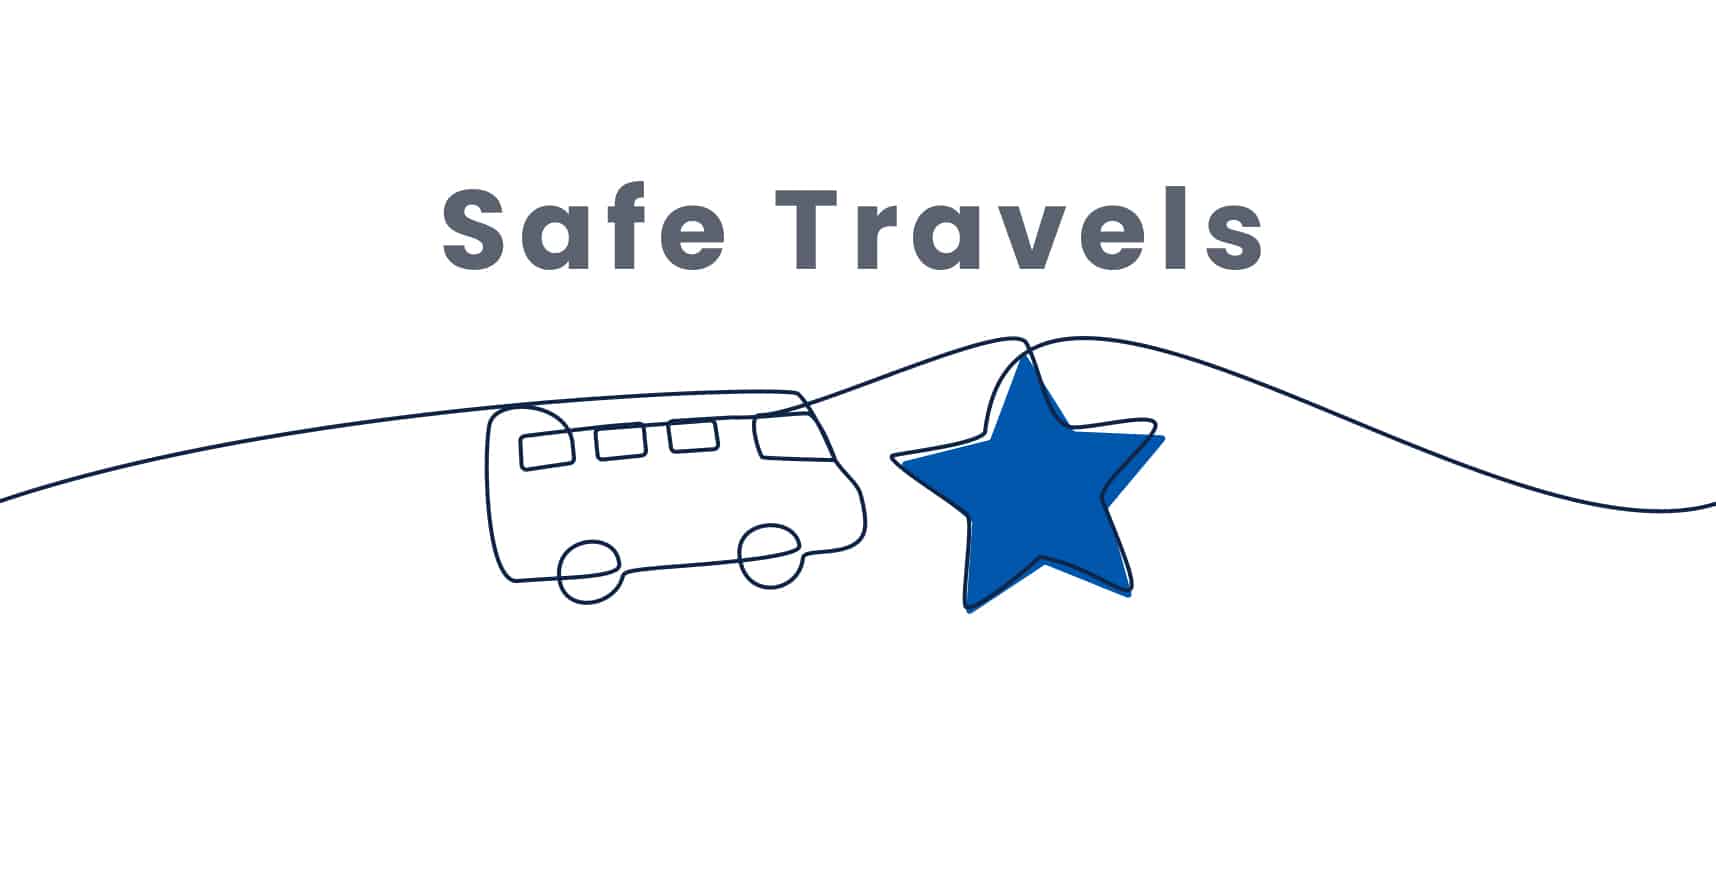 Safe travels banner